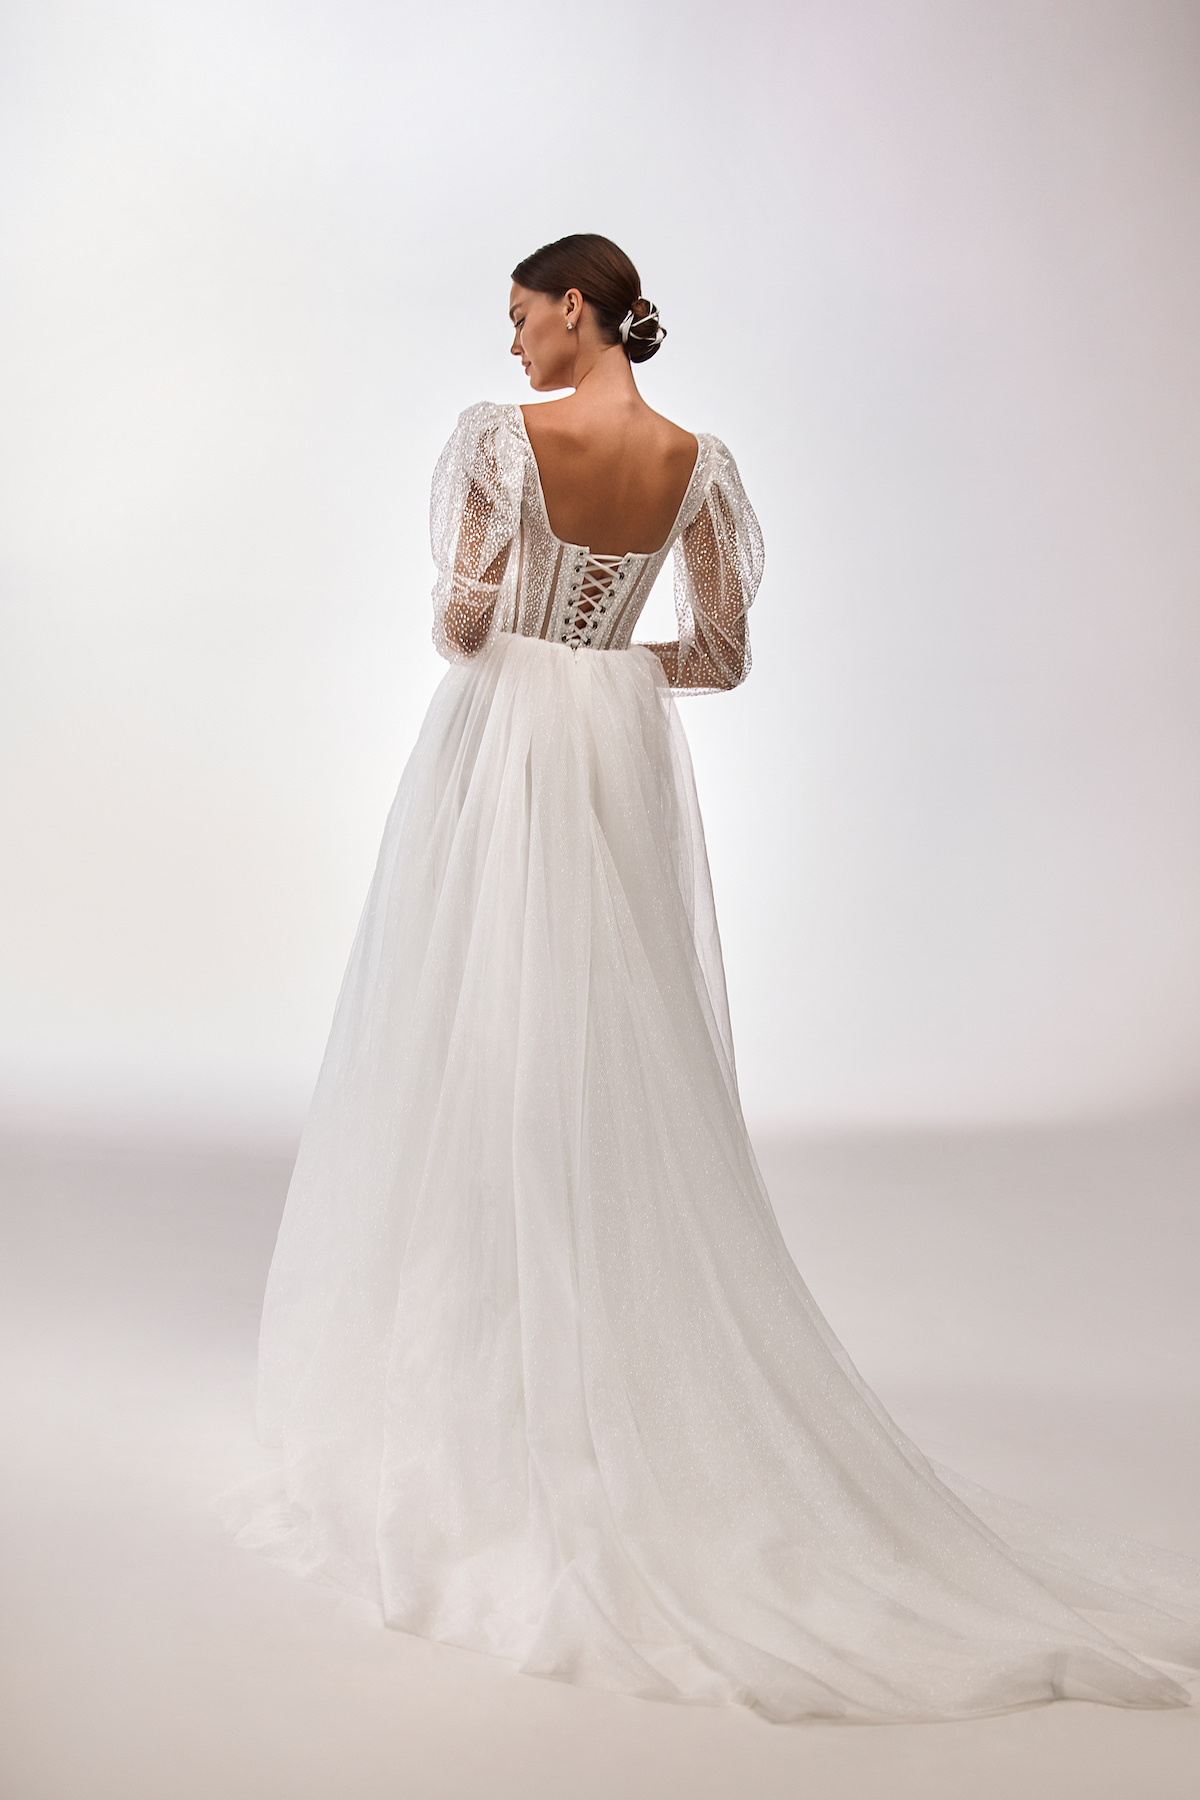 Wedding Dress 2022 by Milla Nova - Gabi White Lace